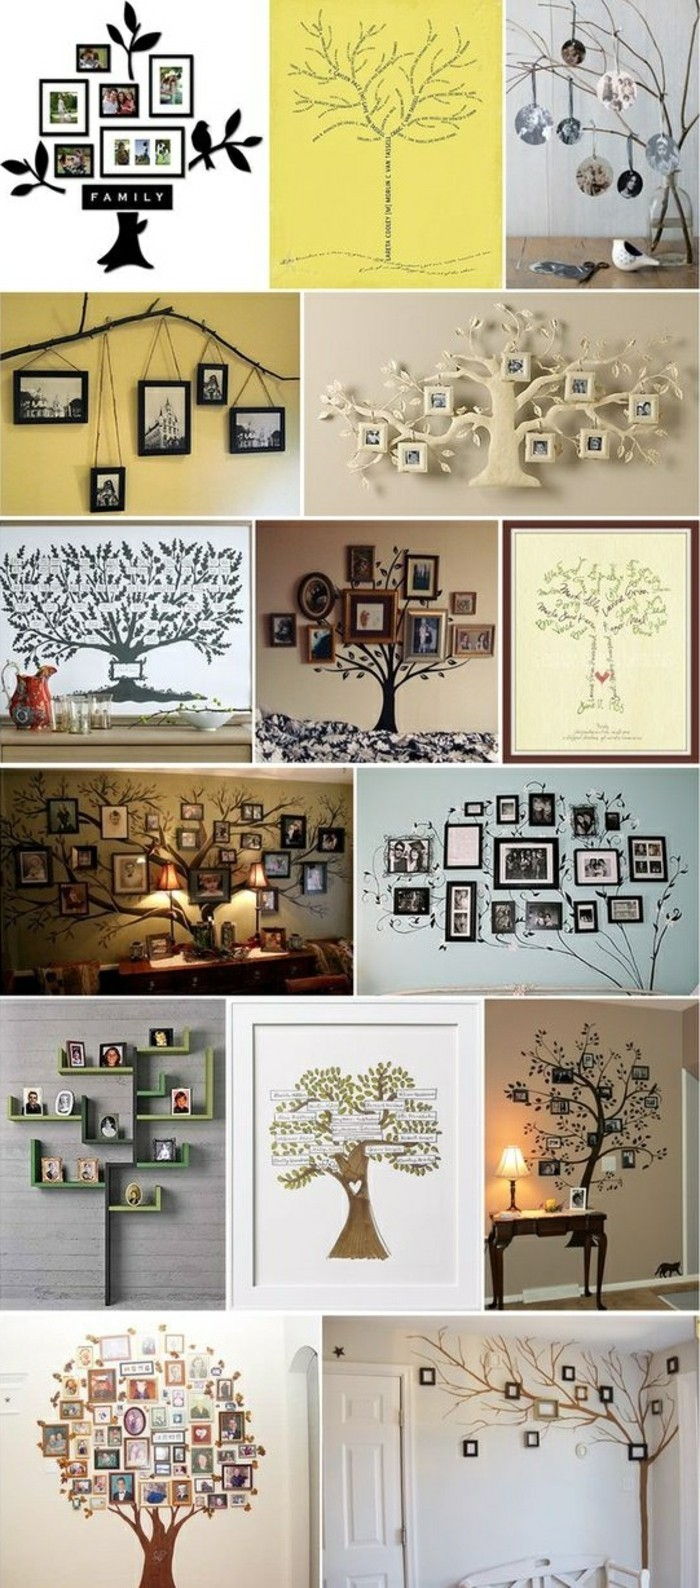 resim çerçevesi duvar-soy ağacı-fikirler-wanddeko-fotoğraflar